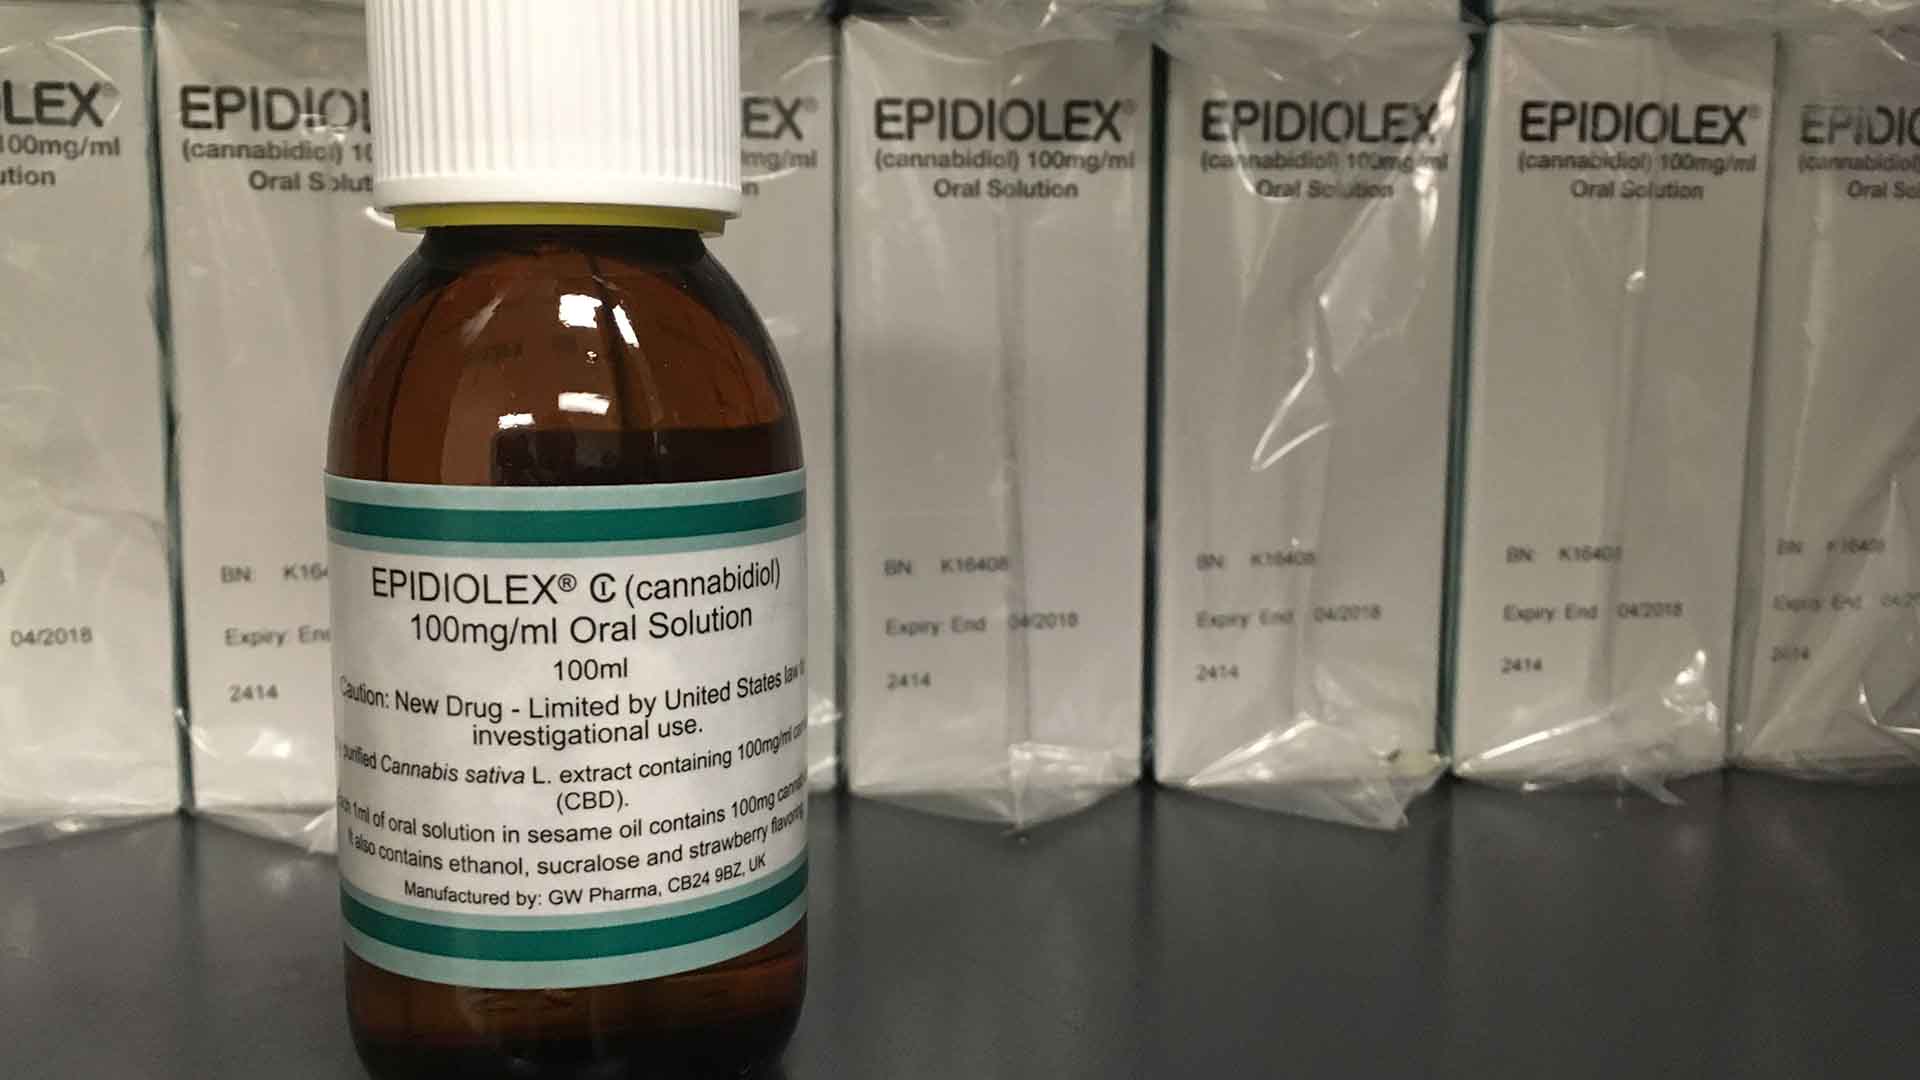 EEUU aprueba un medicamento derivado de la marihuana para tratar la epilepsia infantil